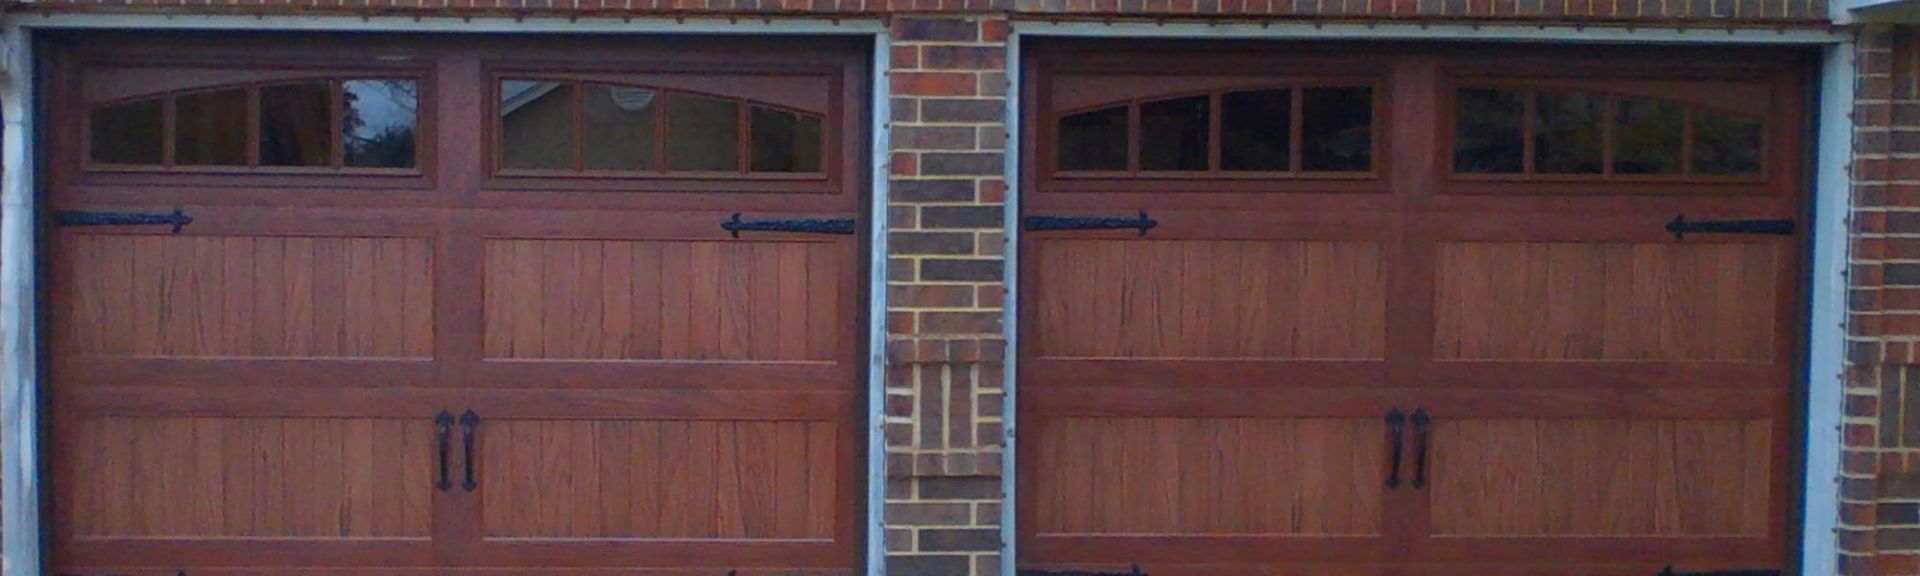 Steel Doors — Dark Red Wood Garage Doors in Big Rock, IL